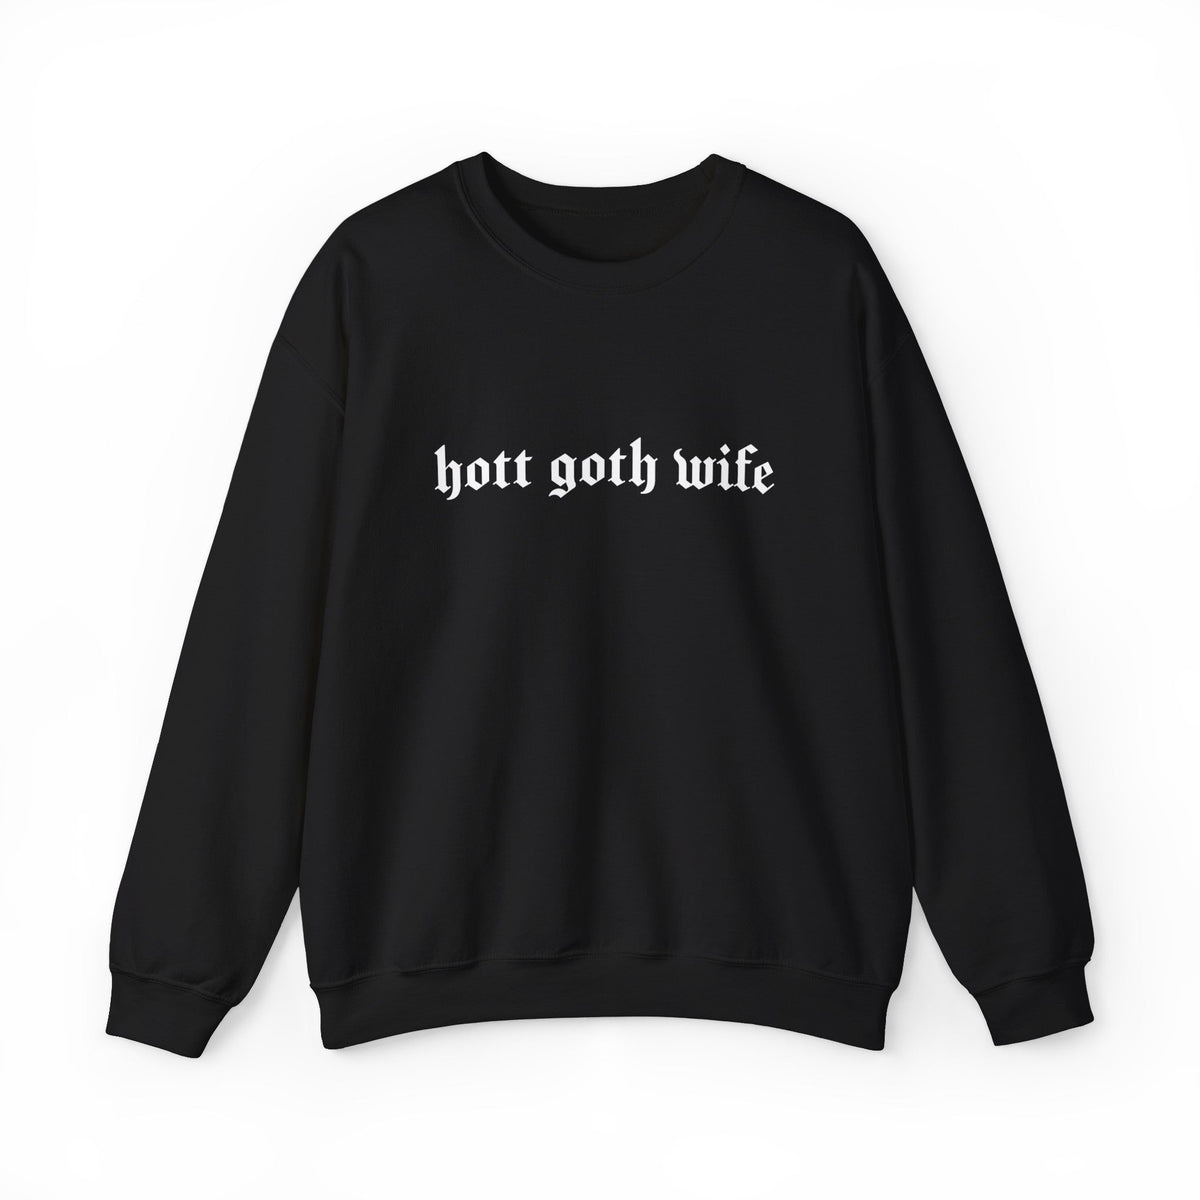 Hott Goth Wife Long Sleeve Crew Neck Sweatshirt - Goth Cloth Co.Sweatshirt38225115572539219015